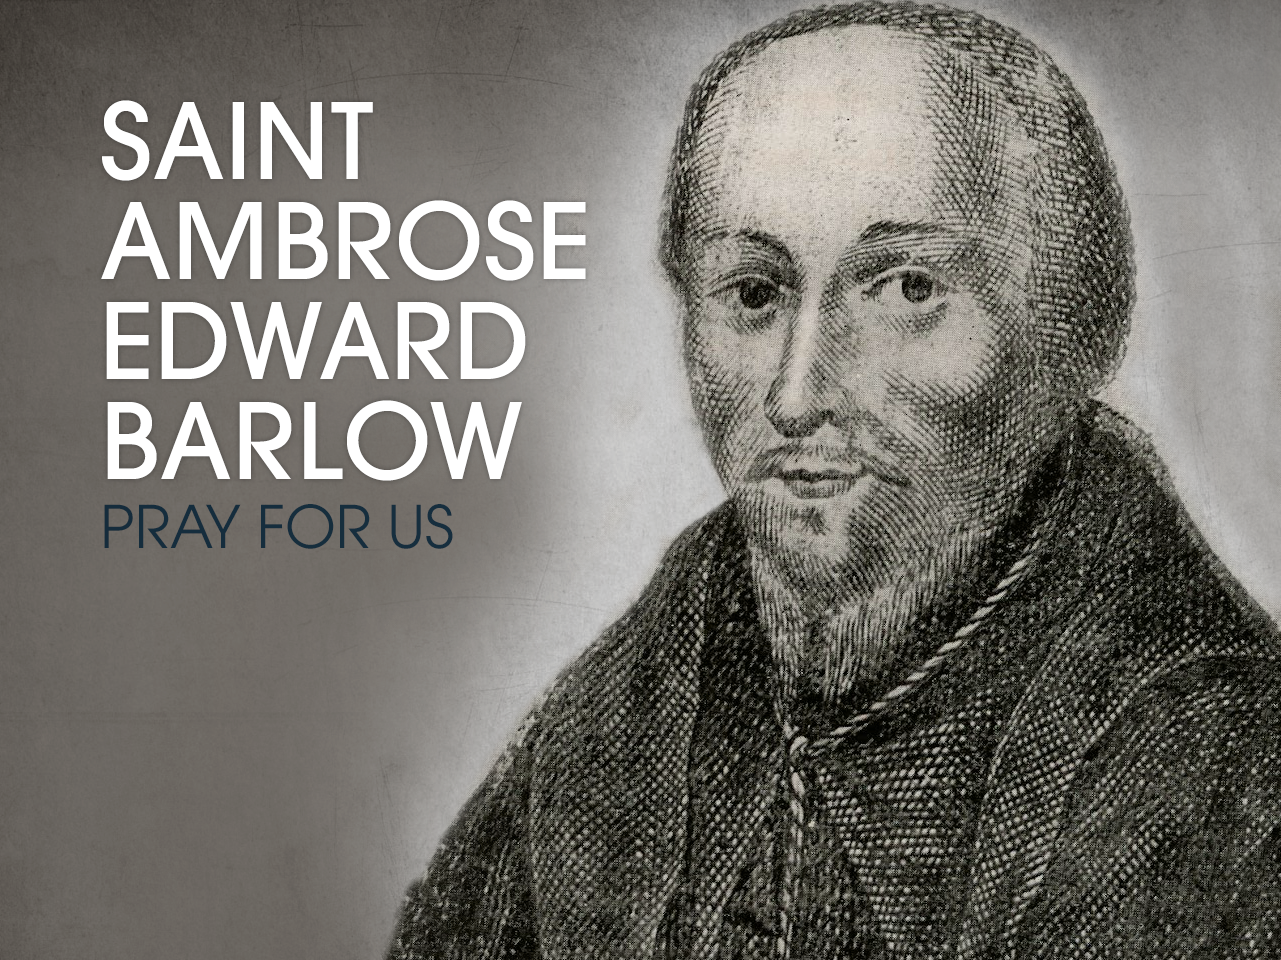 St. Ambrose Edward Barlow